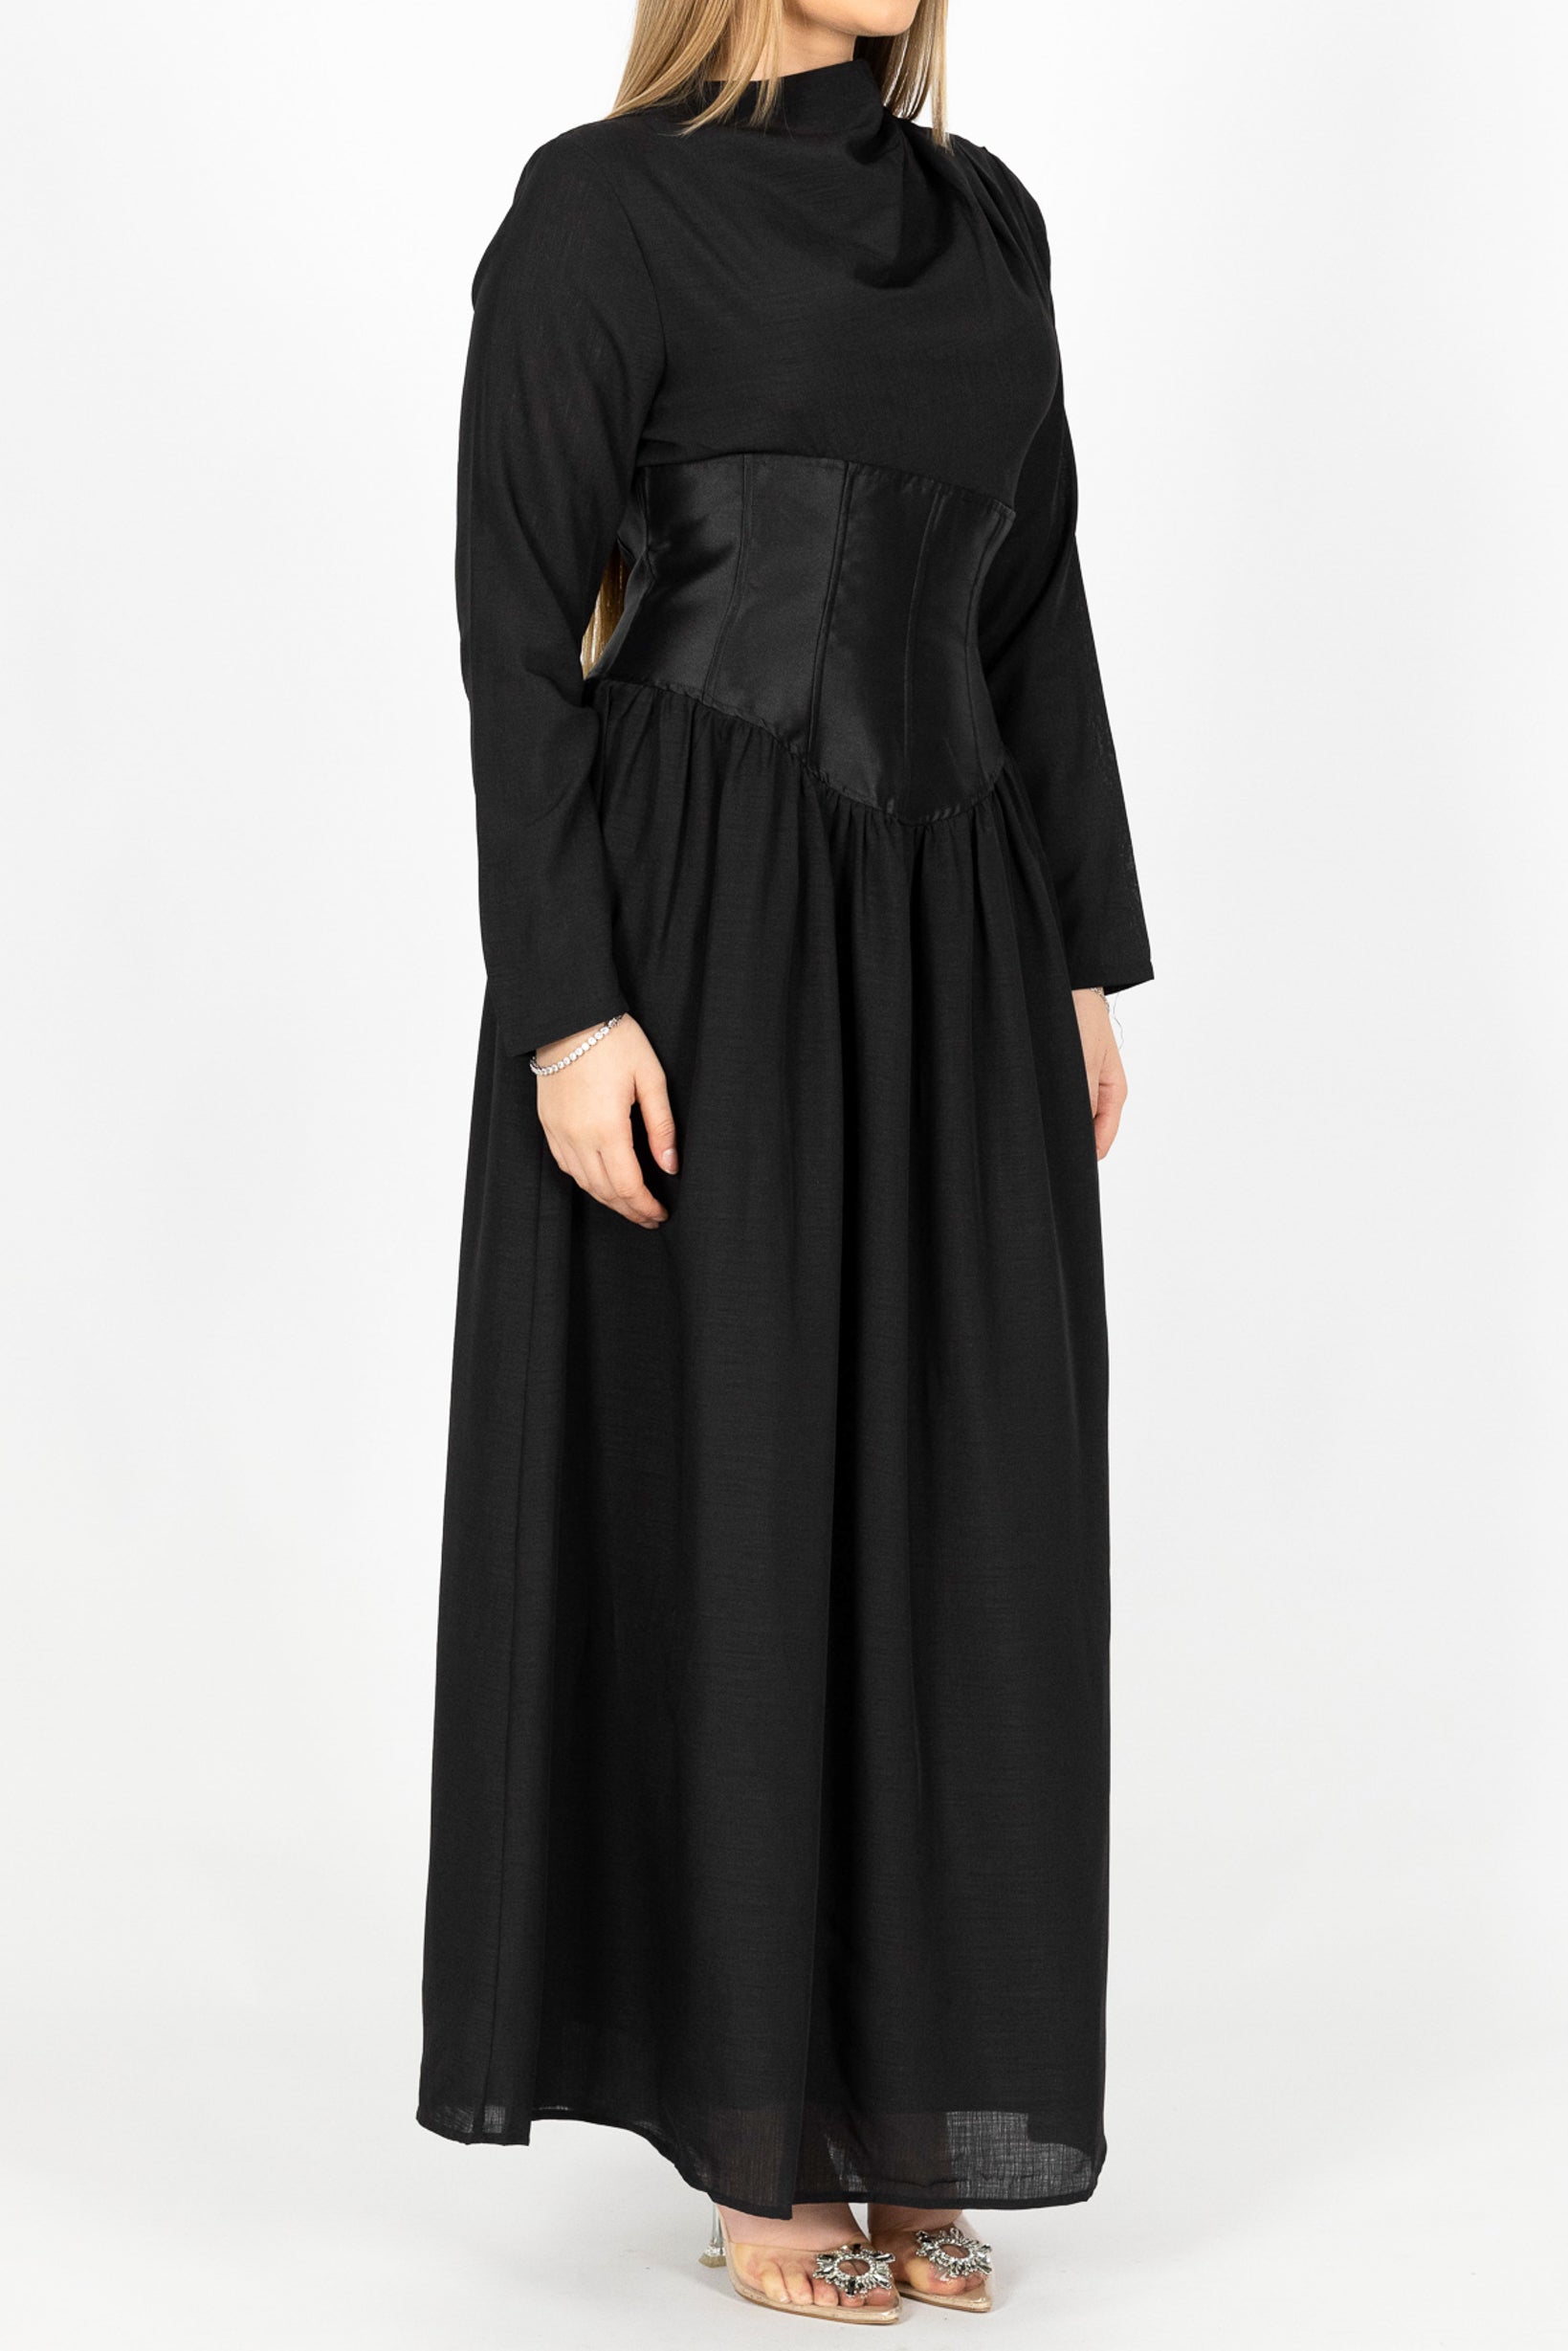 M7909Black-dress-abaya